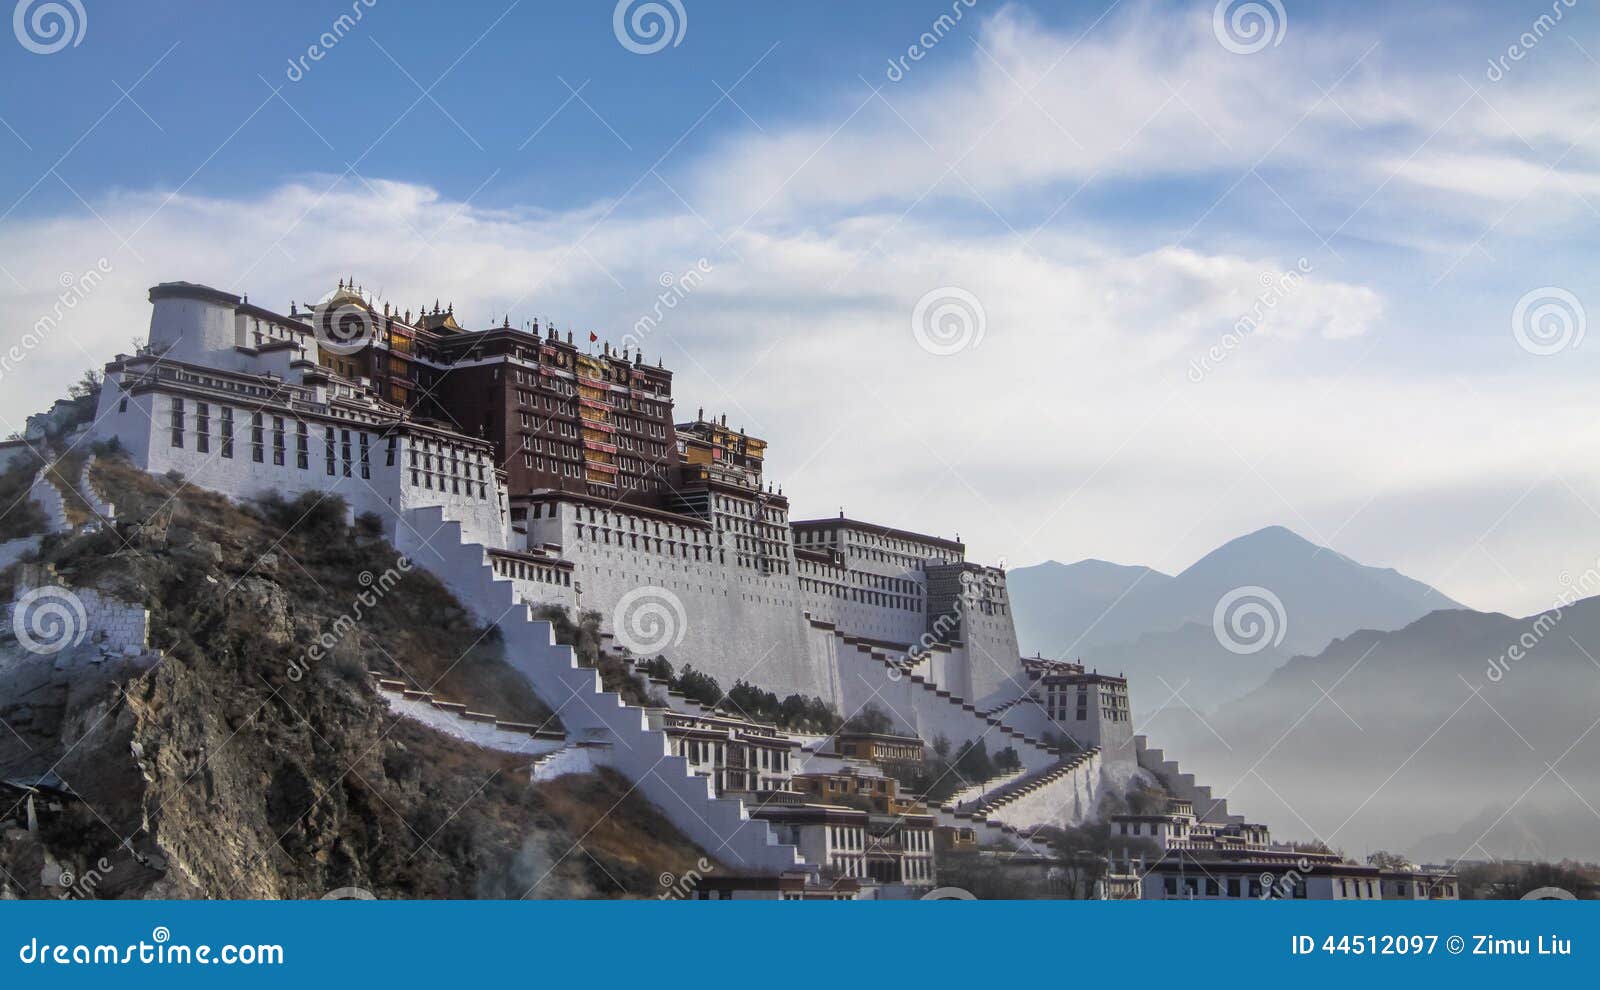 potala palace,tibet